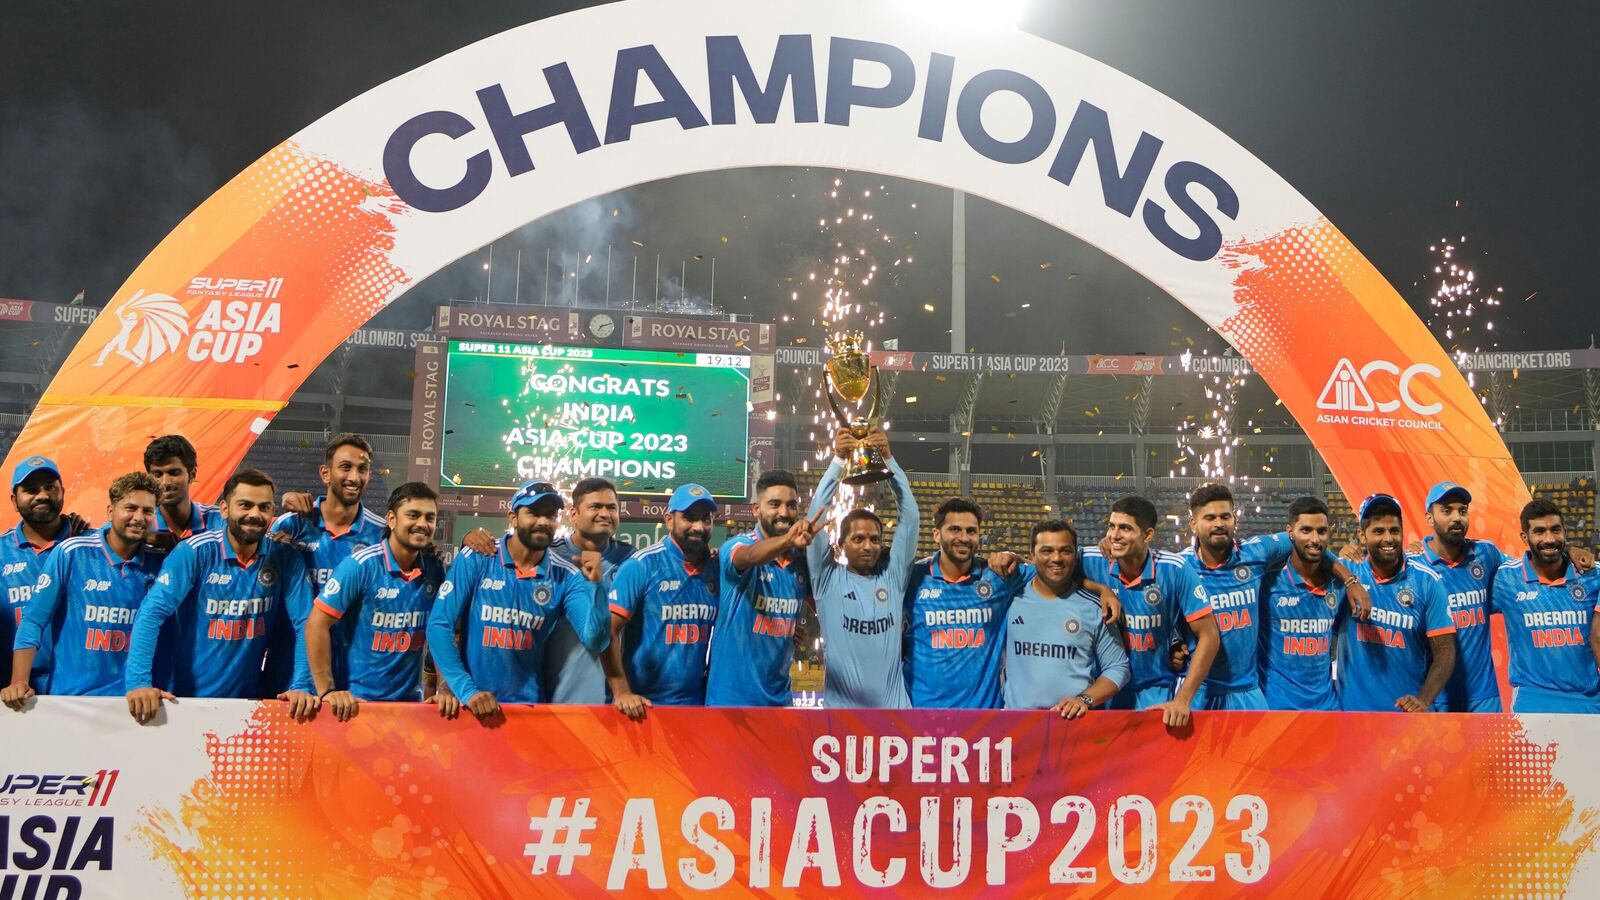 ඉන්දියාව 8 වැනි වරටත් ආසියානු කුසලානය දිනාගනී ! India wins the Asia Cup for the 8th time! ආසියානු කුසලාන ක්‍රිකට් තරගාවලිය 2023